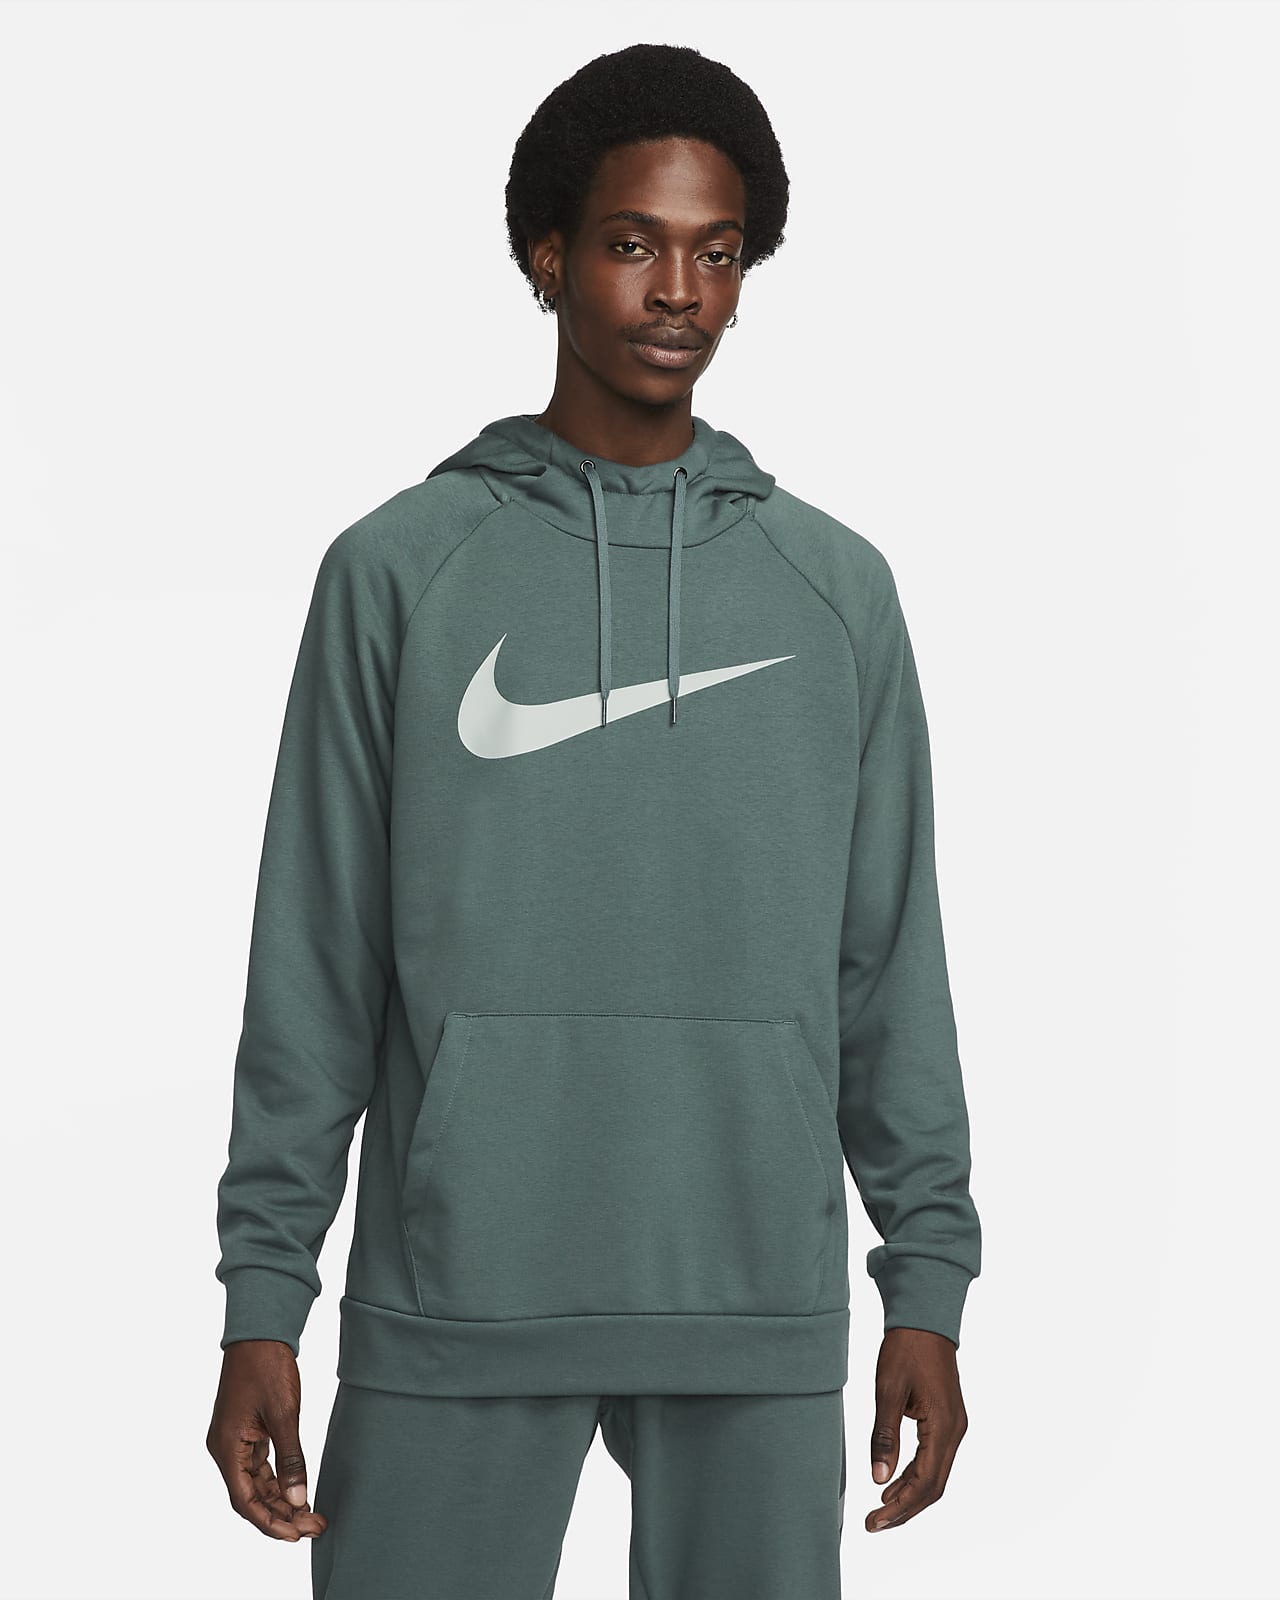 Optimista canal Recuerdo Nike Dri-FIT Sudadera con capucha de entrenamiento - Hombre. Nike ES